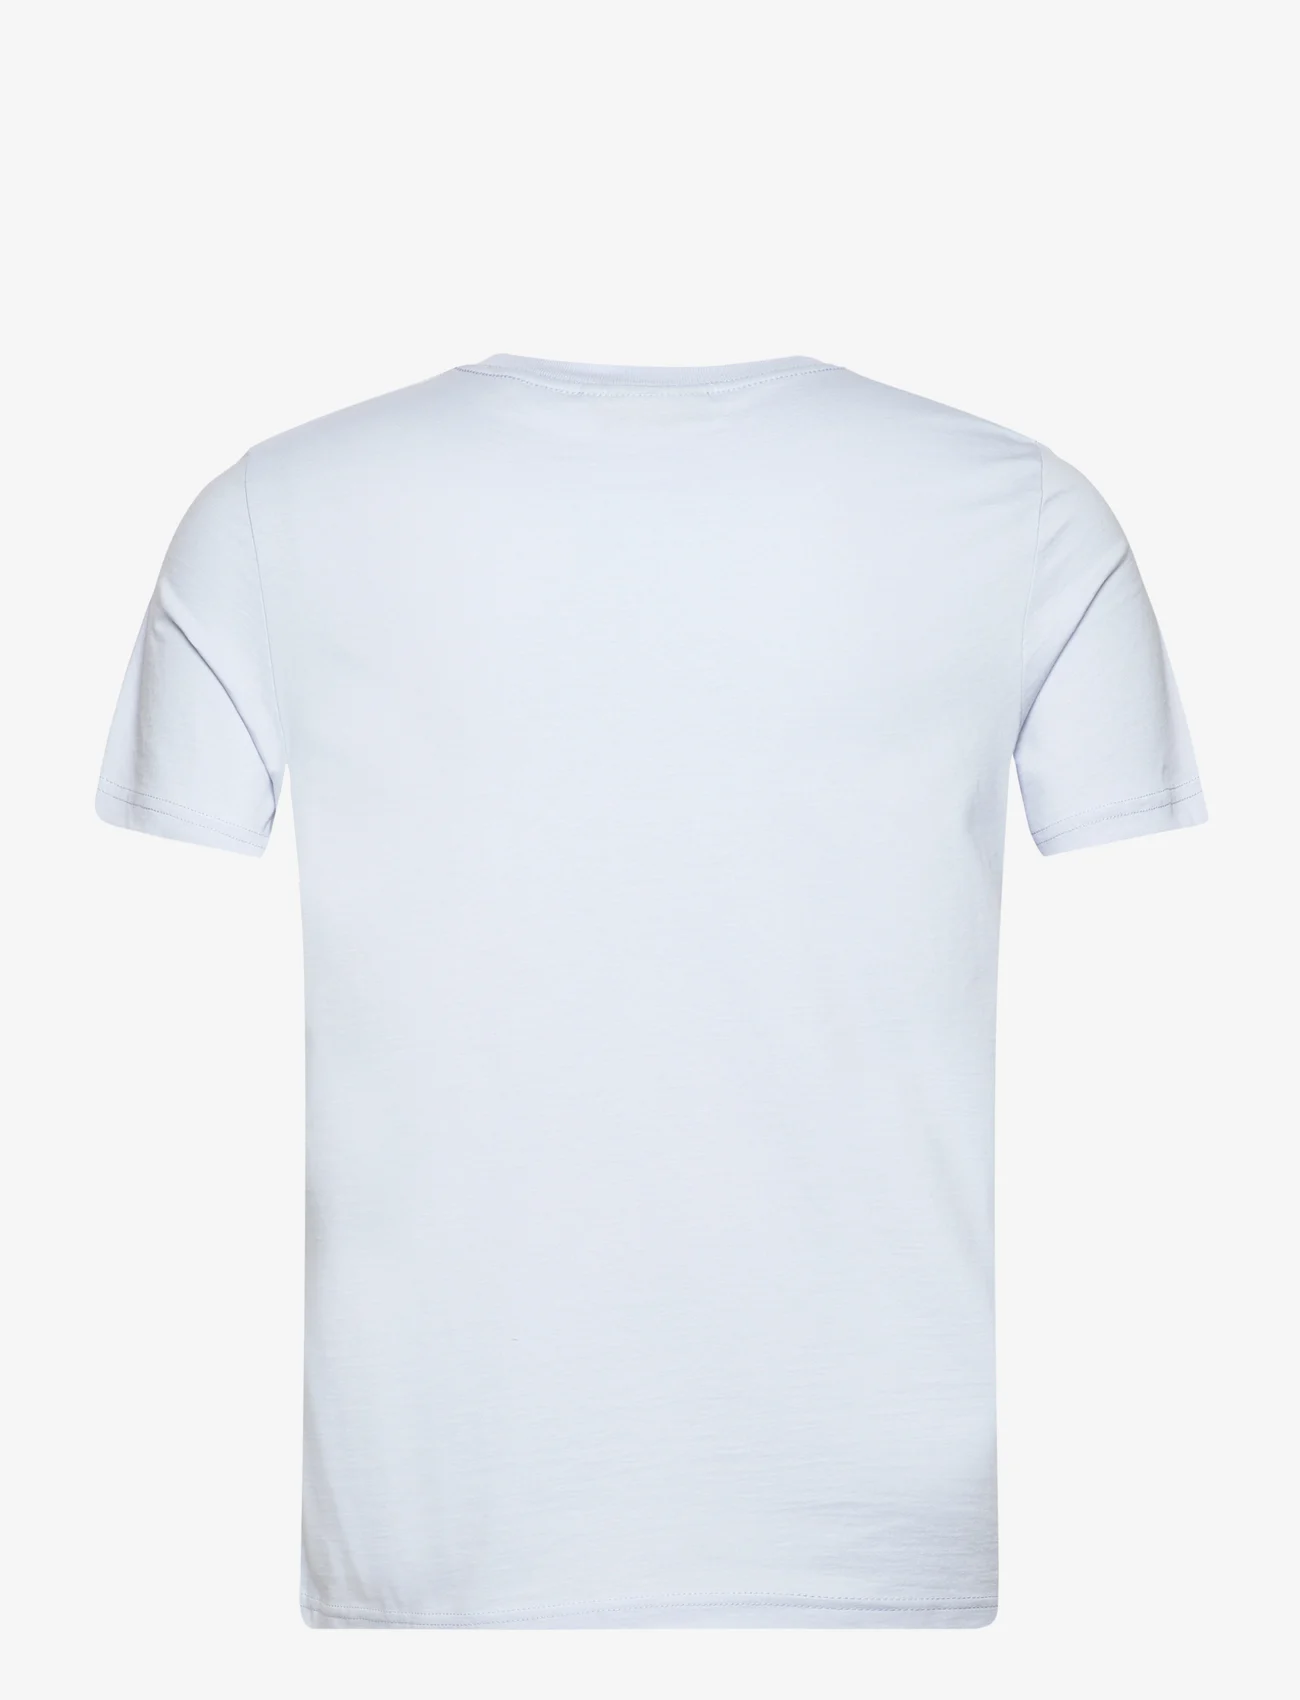 Morris - Jersey Tee - kortärmade t-shirts - light blue - 1